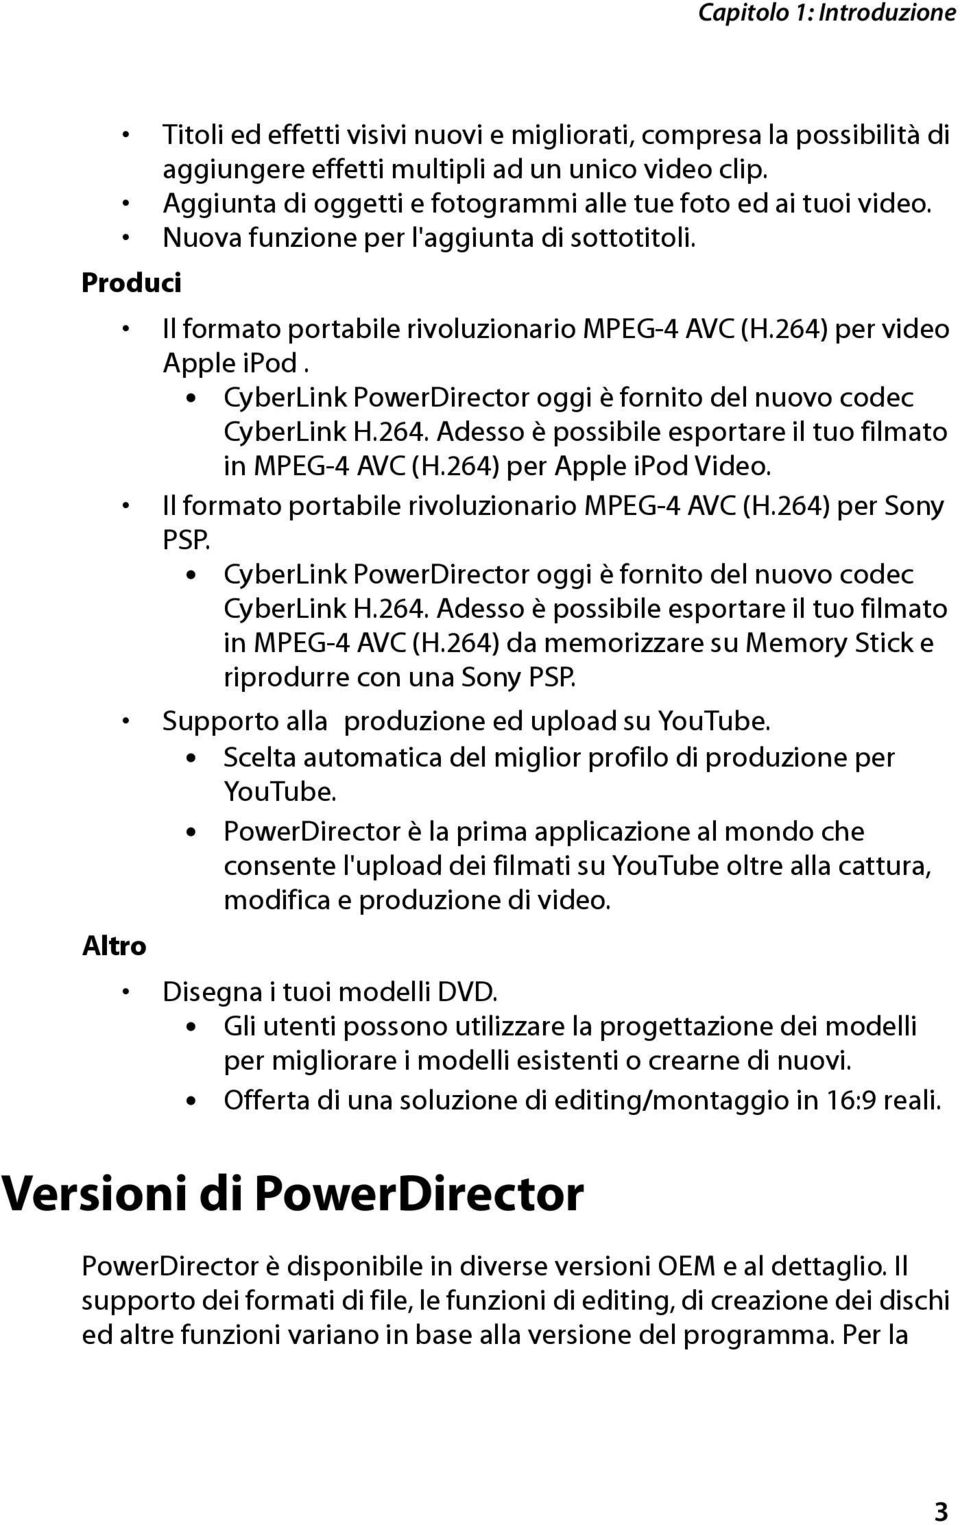 CyberLink PowerDirector oggi è fornito del nuovo codec CyberLink H.264. Adesso è possibile esportare il tuo filmato in MPEG-4 AVC (H.264) per Apple ipod Video.